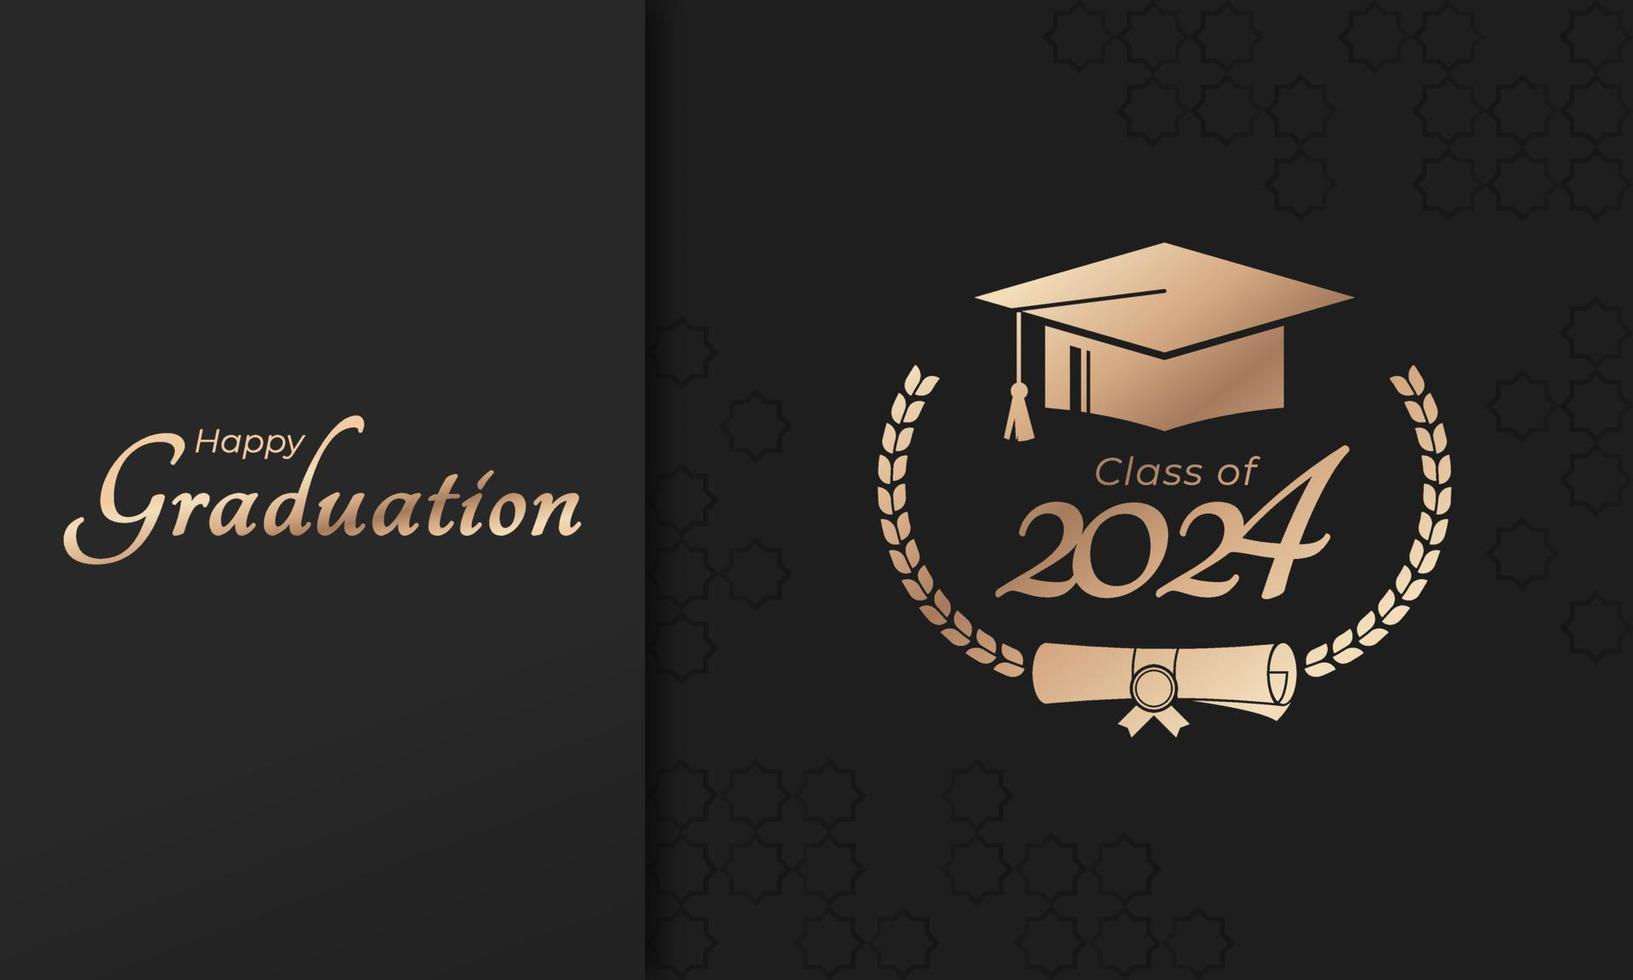 classe de 2024 année l'obtention du diplôme de décorer félicitations avec laurier couronne pour école diplômés vecteur